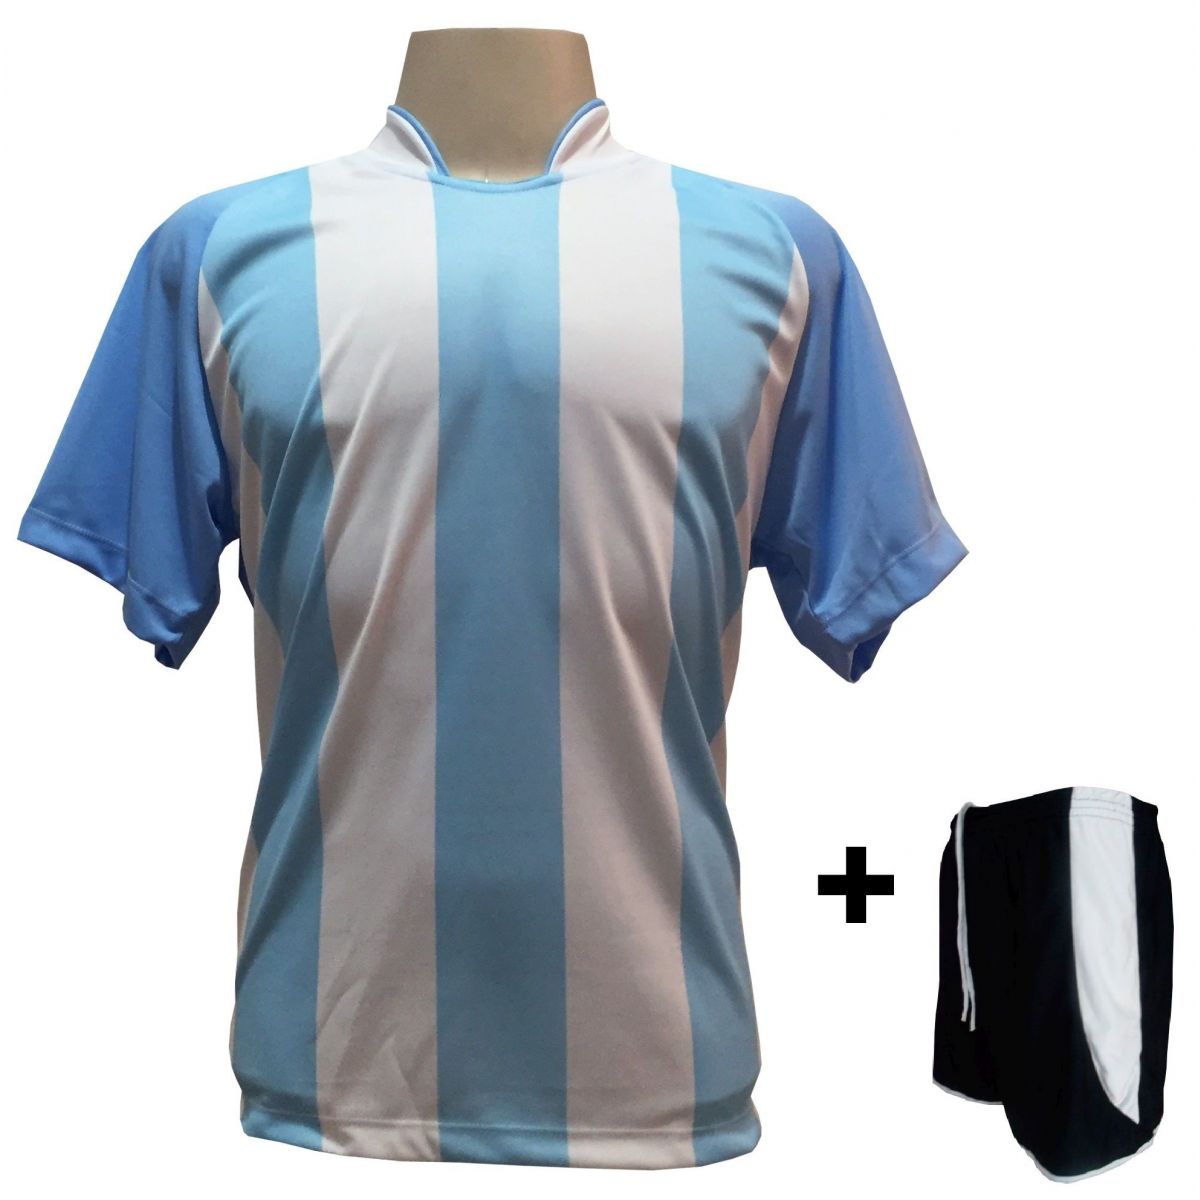 Uniforme Esportivo com 20 camisas modelo Milan Celeste/Branco + 20 calções modelo Copa Preto/Branco + Brindes